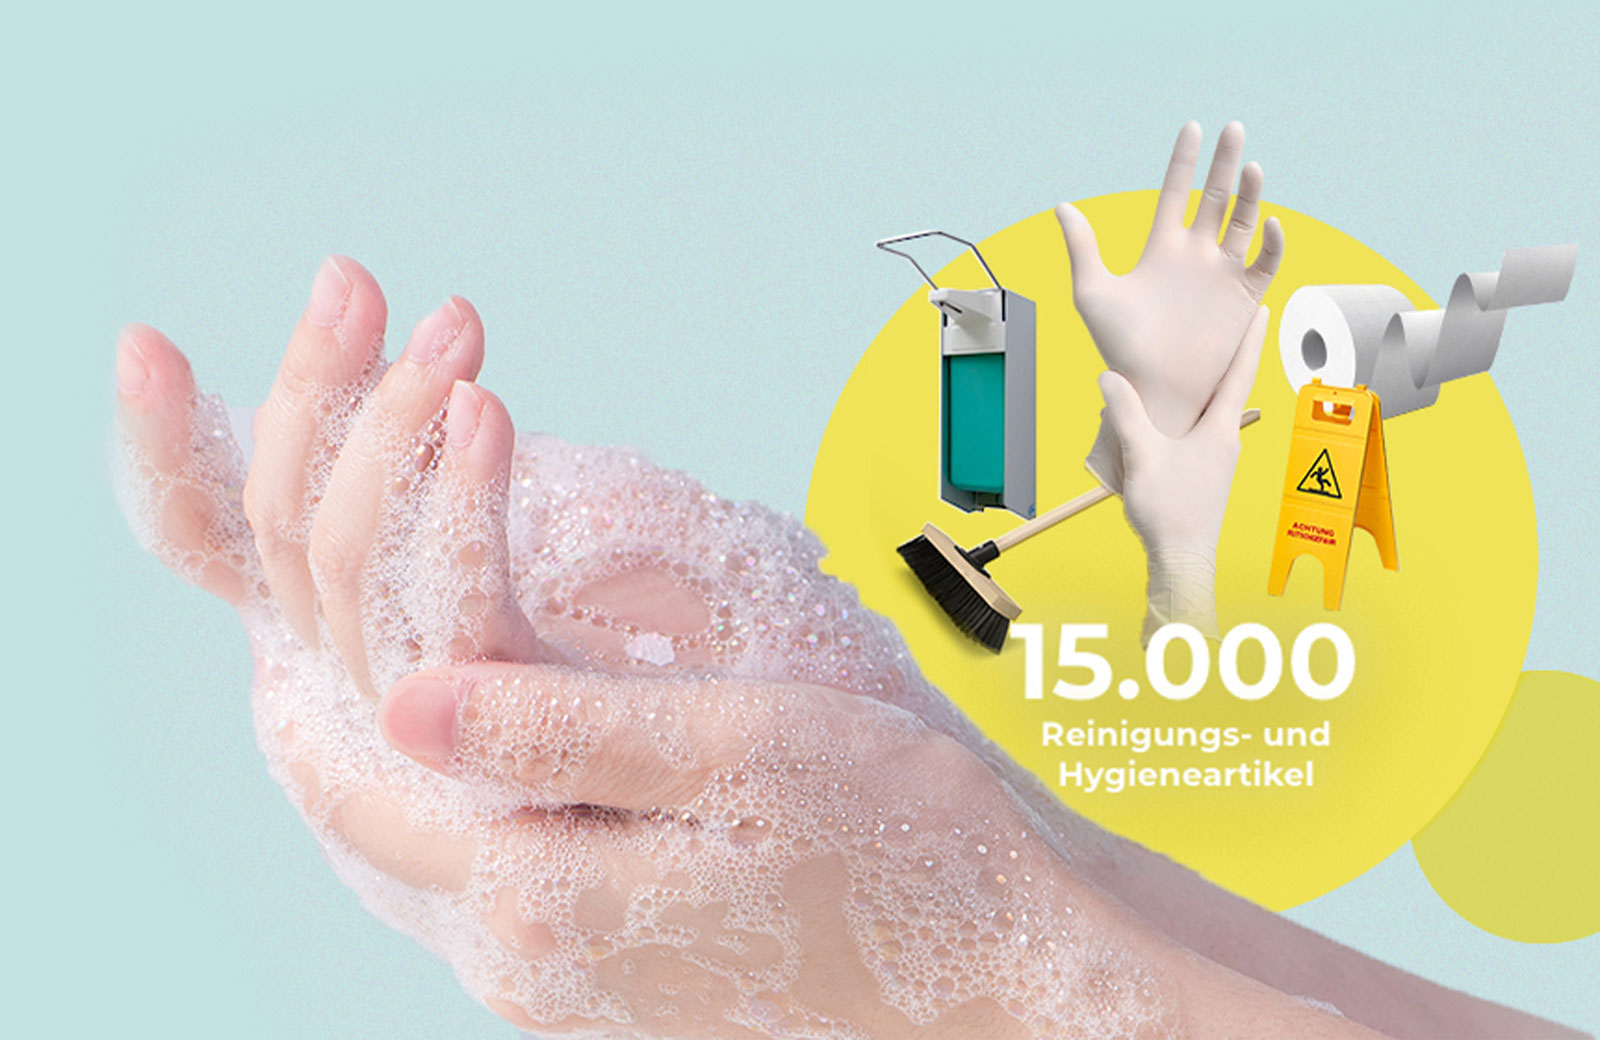 15.000 Reinigungs- und Hygieneartikel